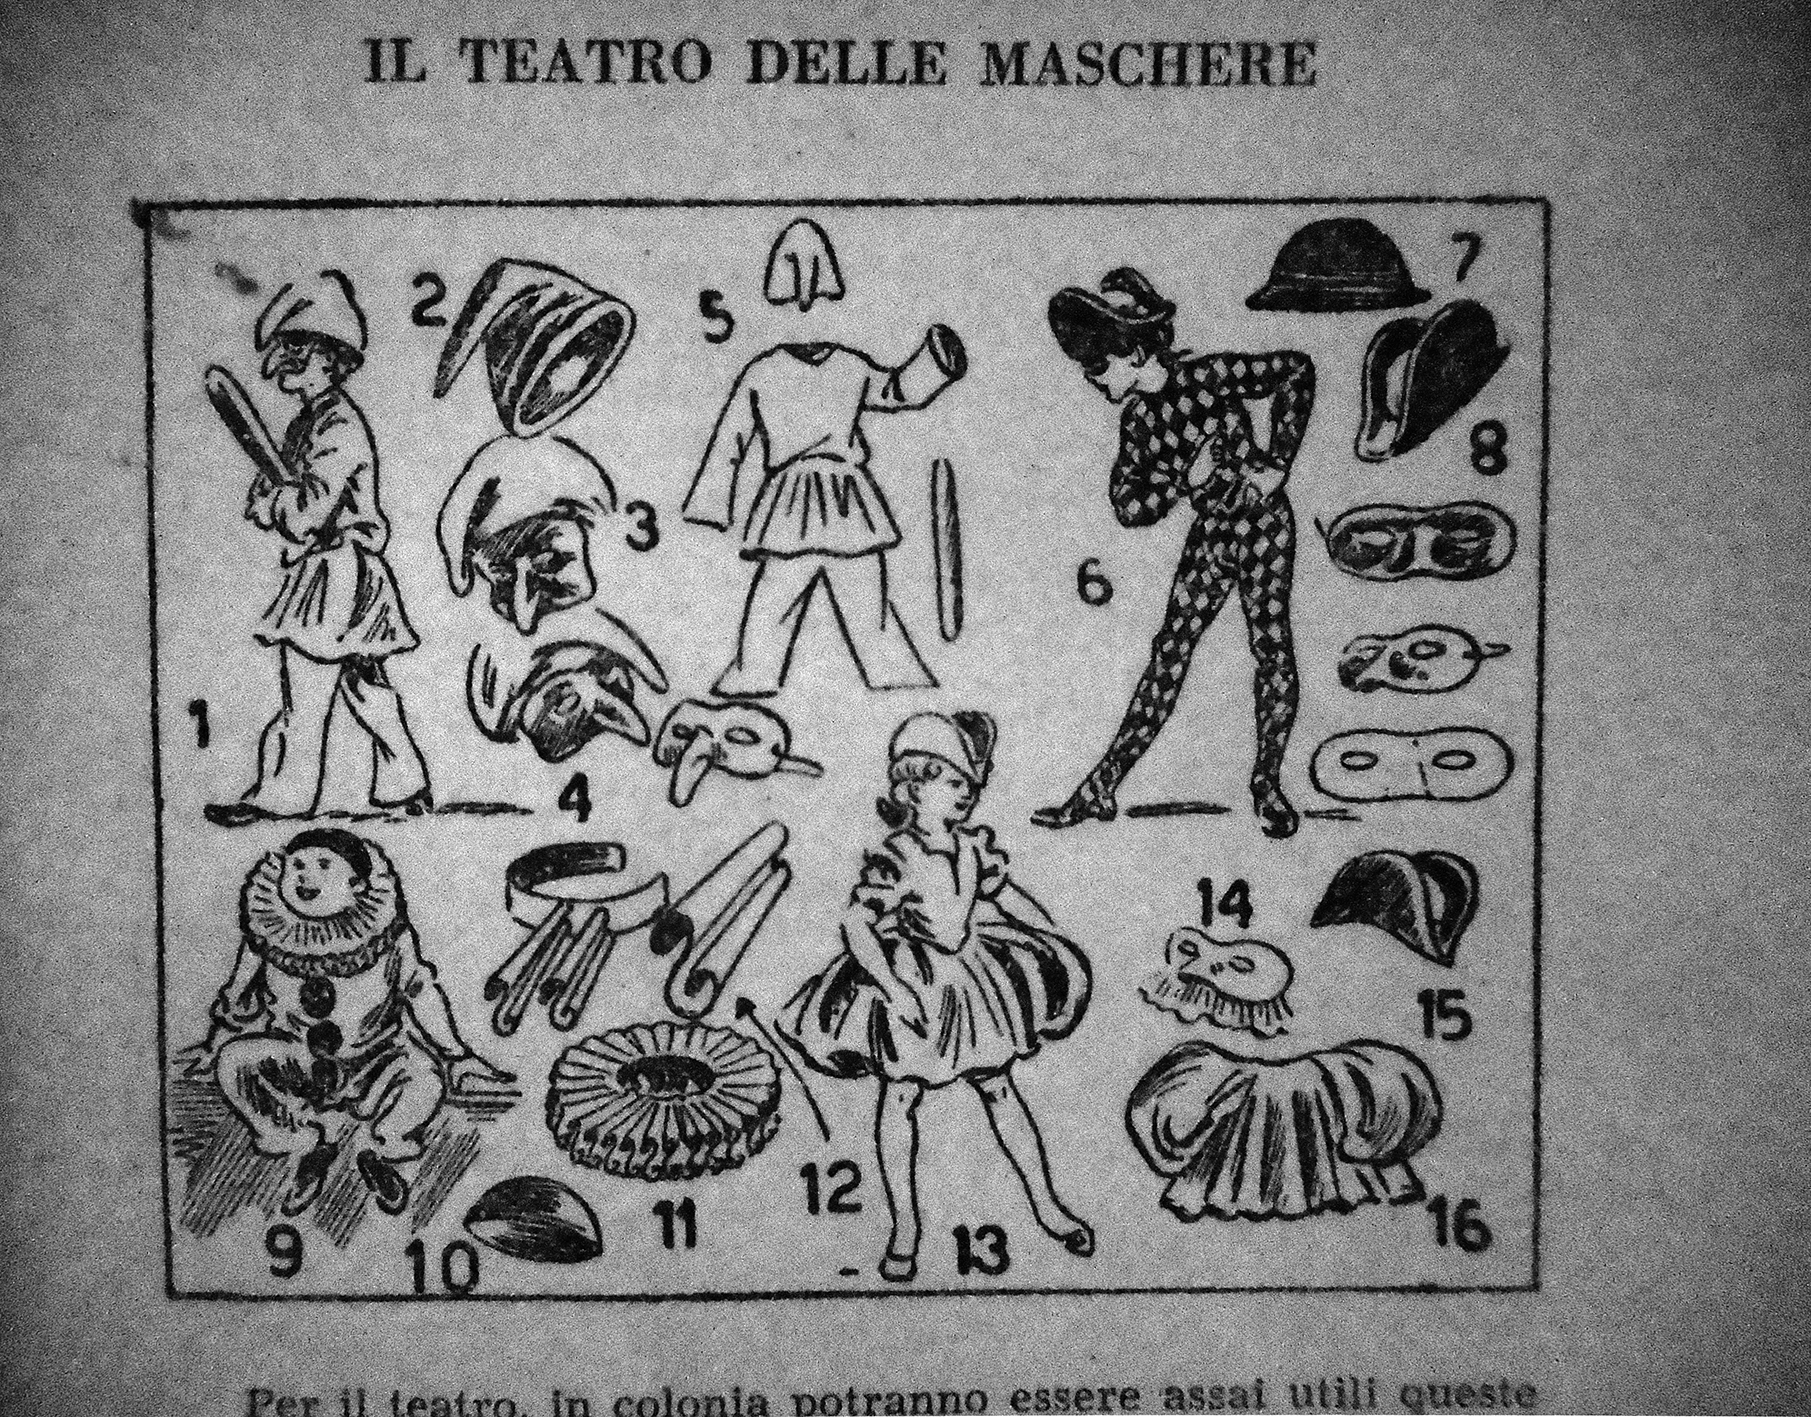 Fig. 8. Proposta di costumi teatrali da preparare in colonia [da “Colonia felice”, p. 75].